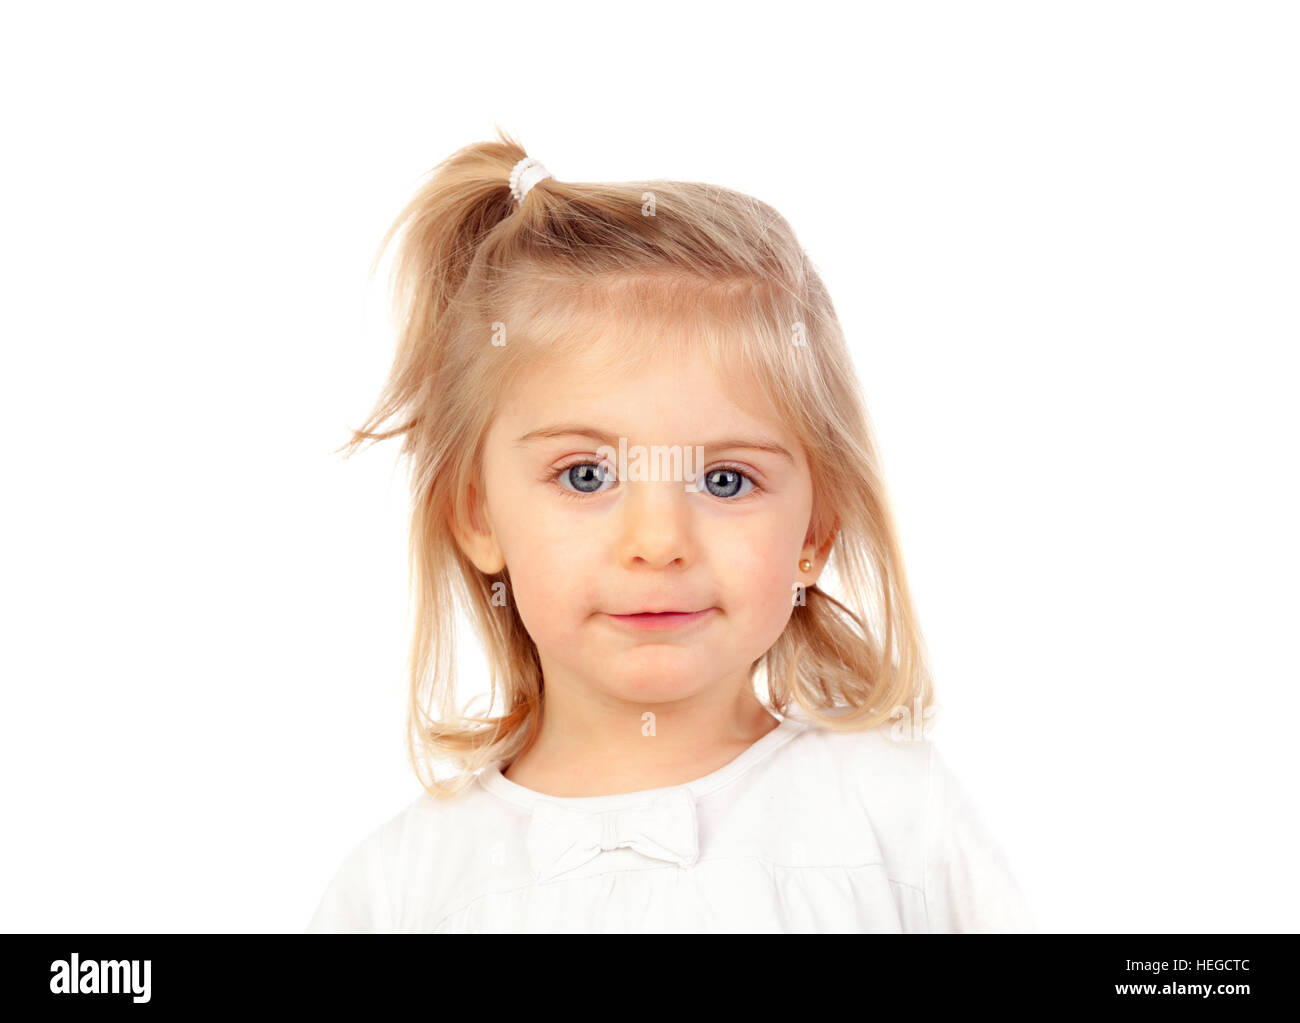 Jolie petite fille blonde aux yeux bleus isolé sur fond blanc Banque D'Images